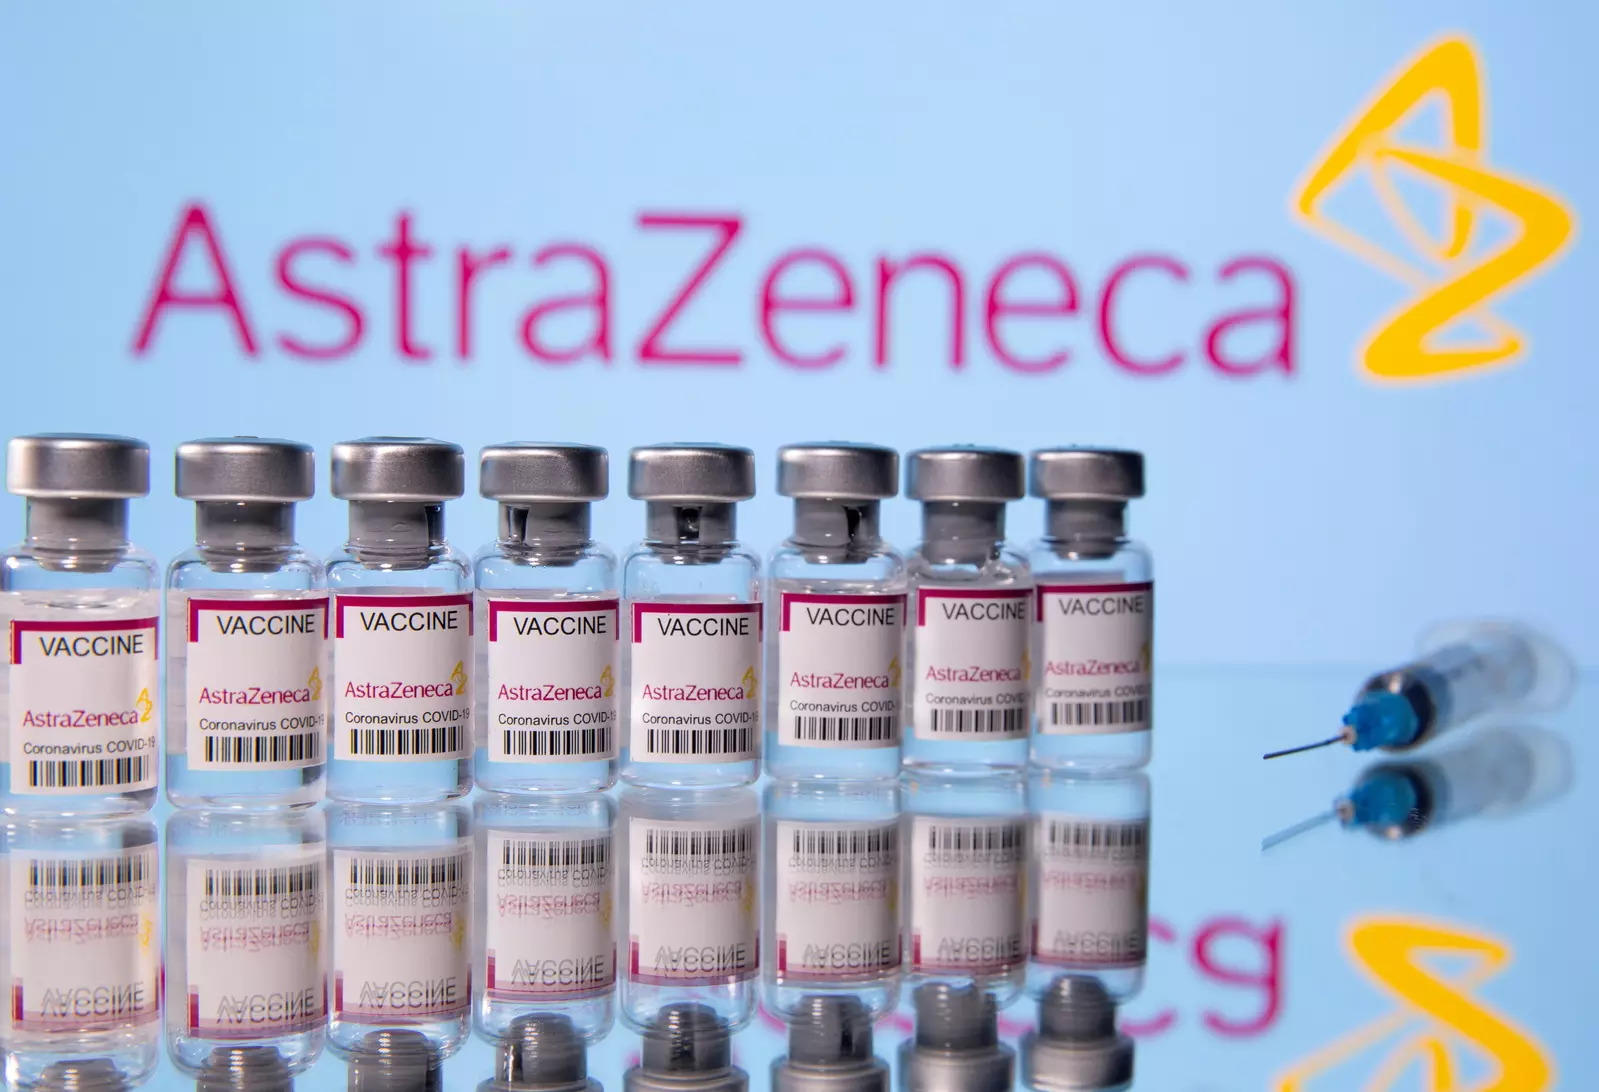 AstraZeneca ممکن است در واکسن ها باقی نماند، اما مدیر عامل شرکت هیچ پشیمانی از کووید ندارد